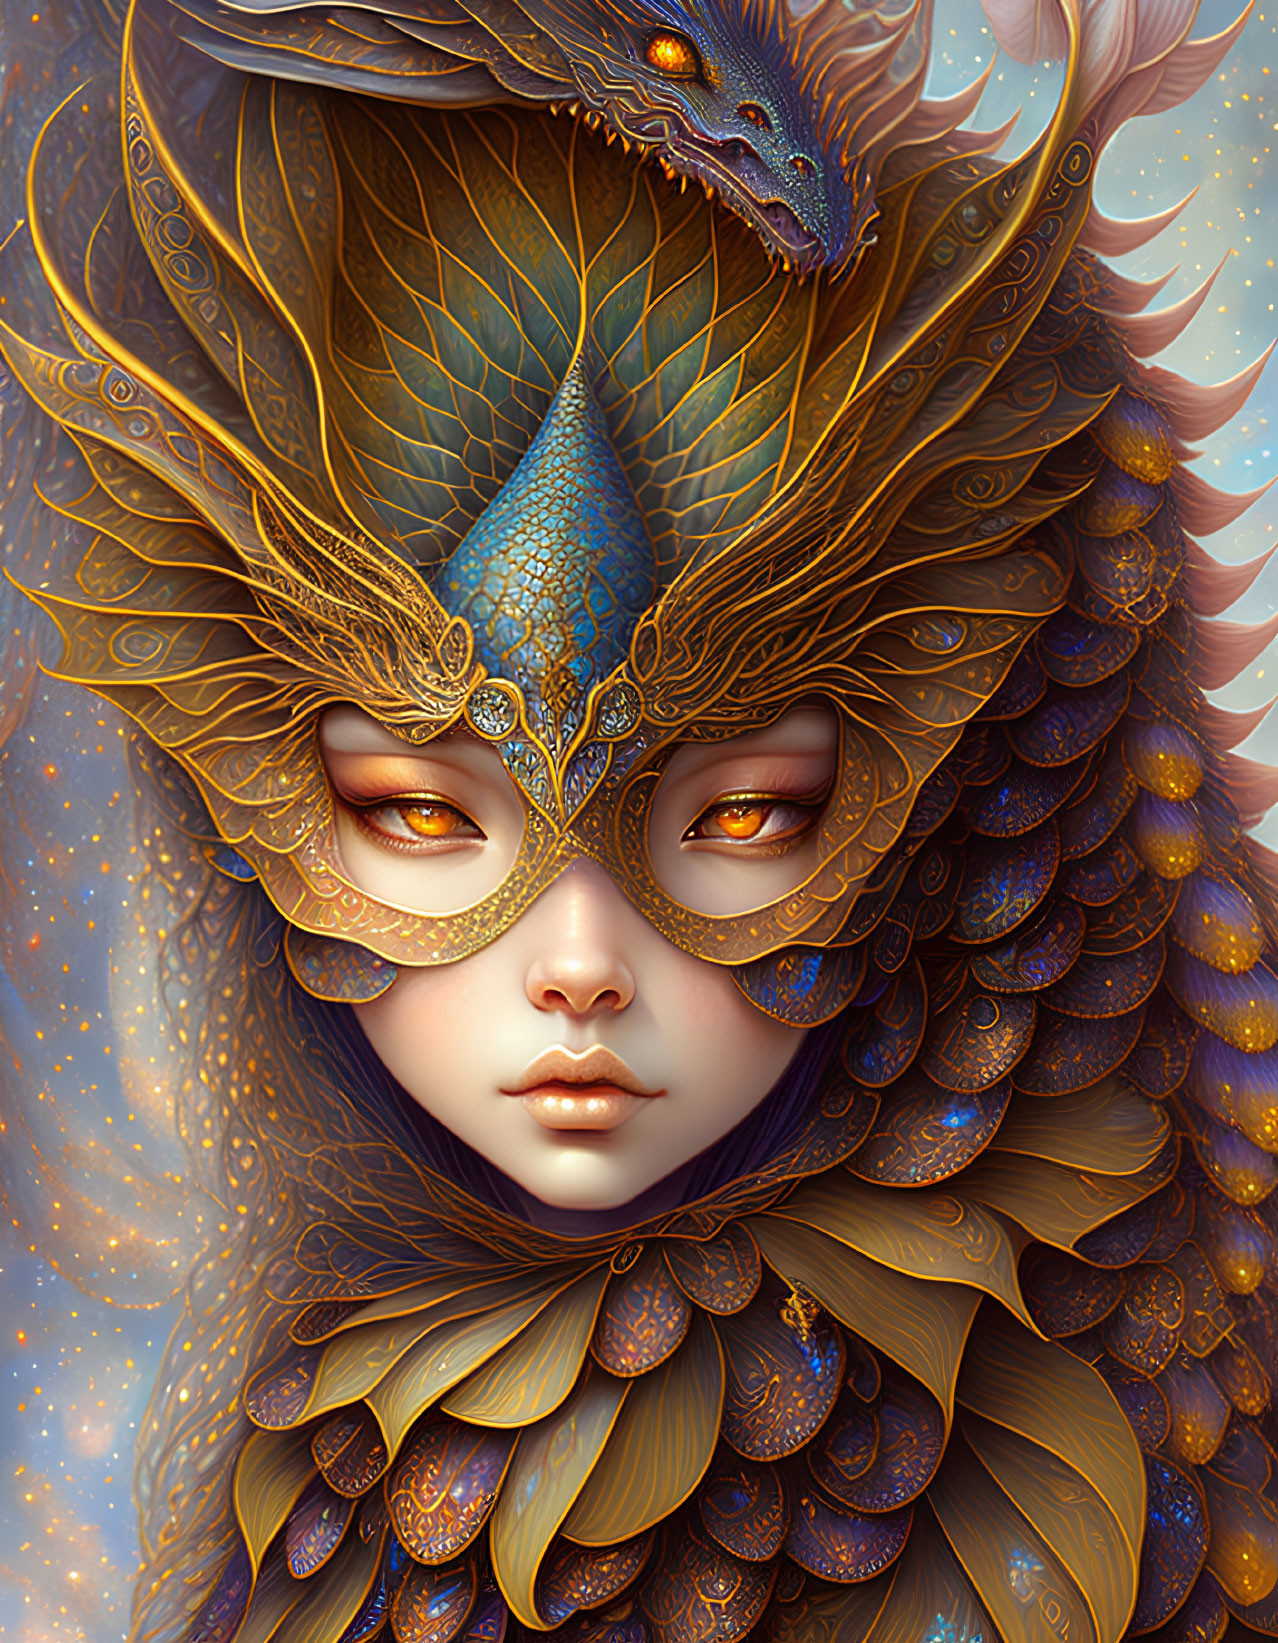 Fantastical portrait of serene figure in dragon-themed attire